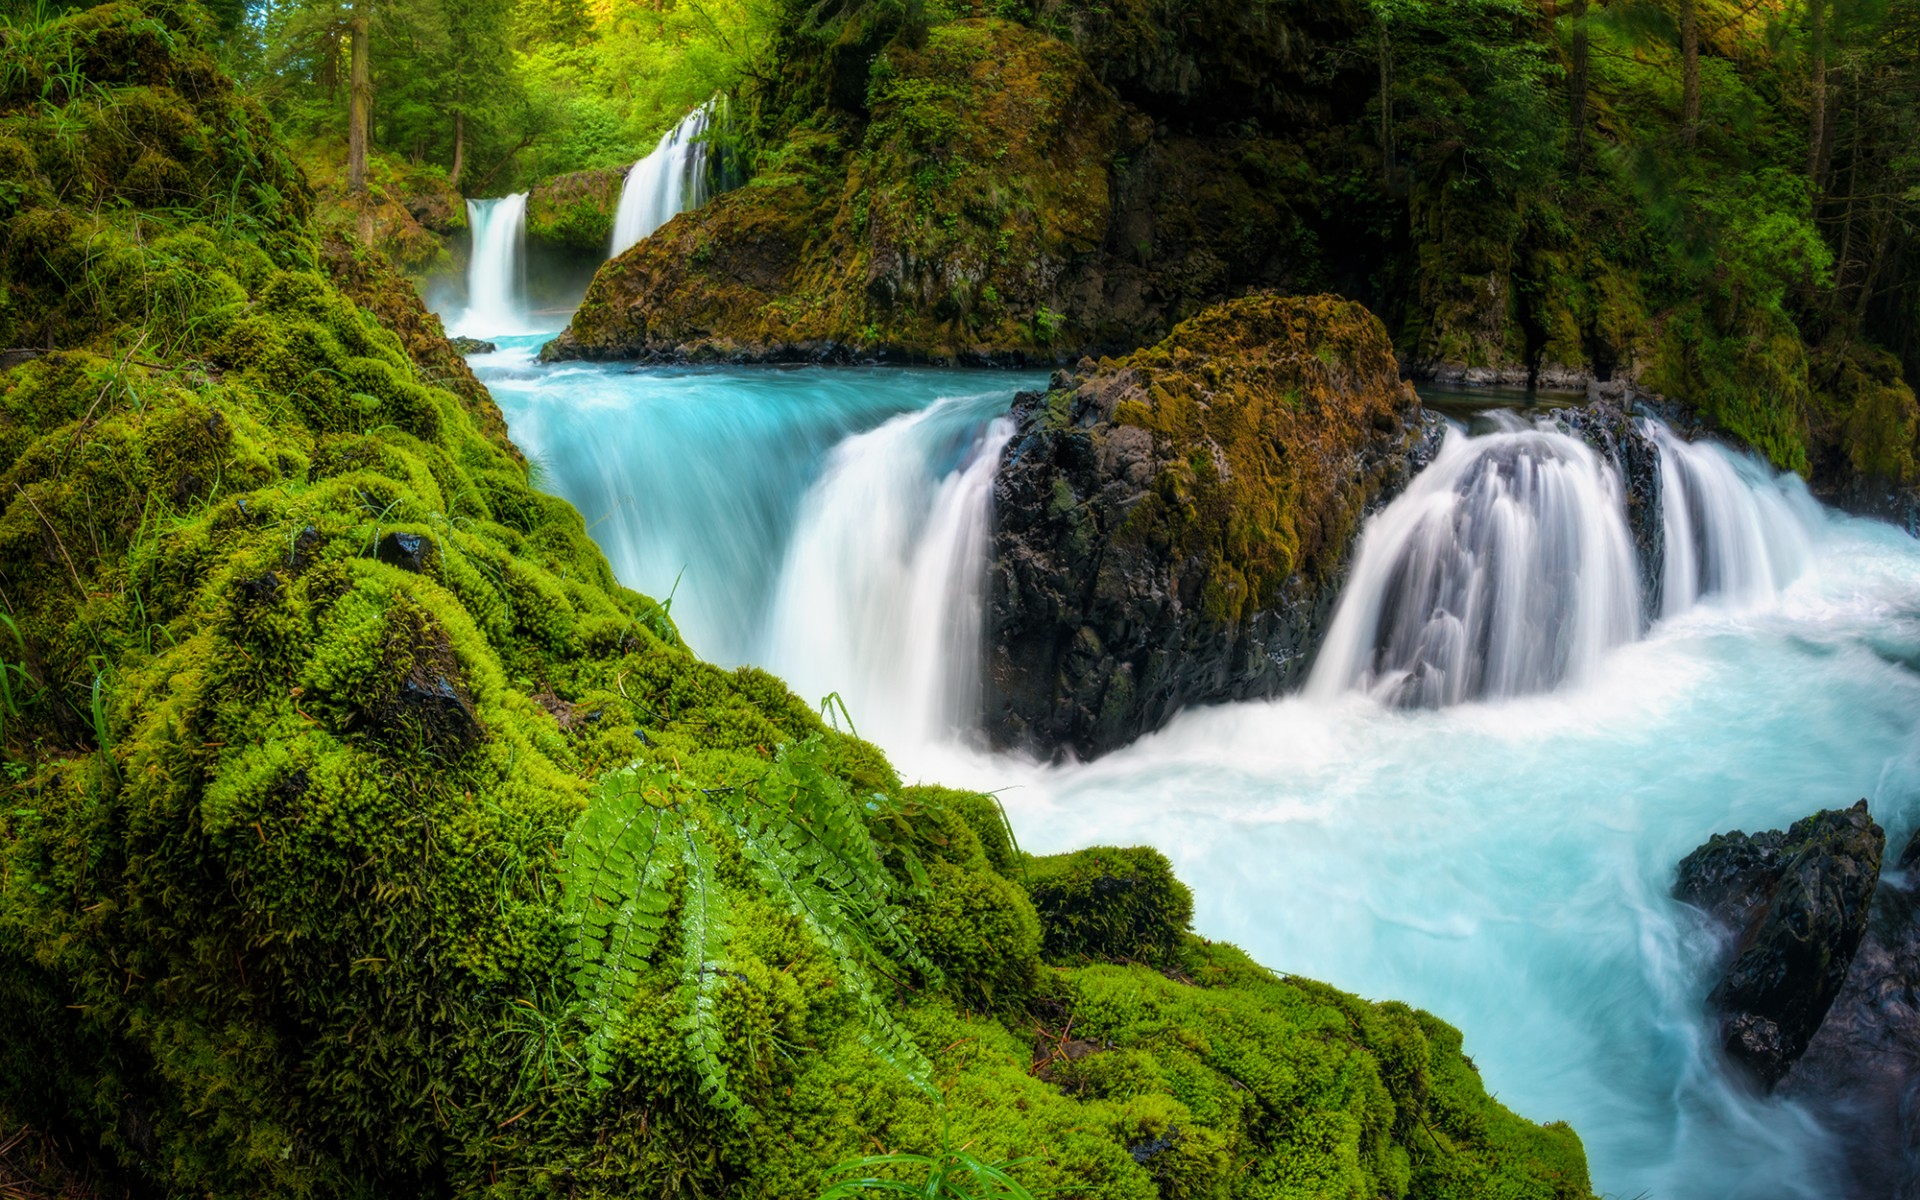 تصویر پس زمینه از منظره رویایی با آبشار فیروزه ای